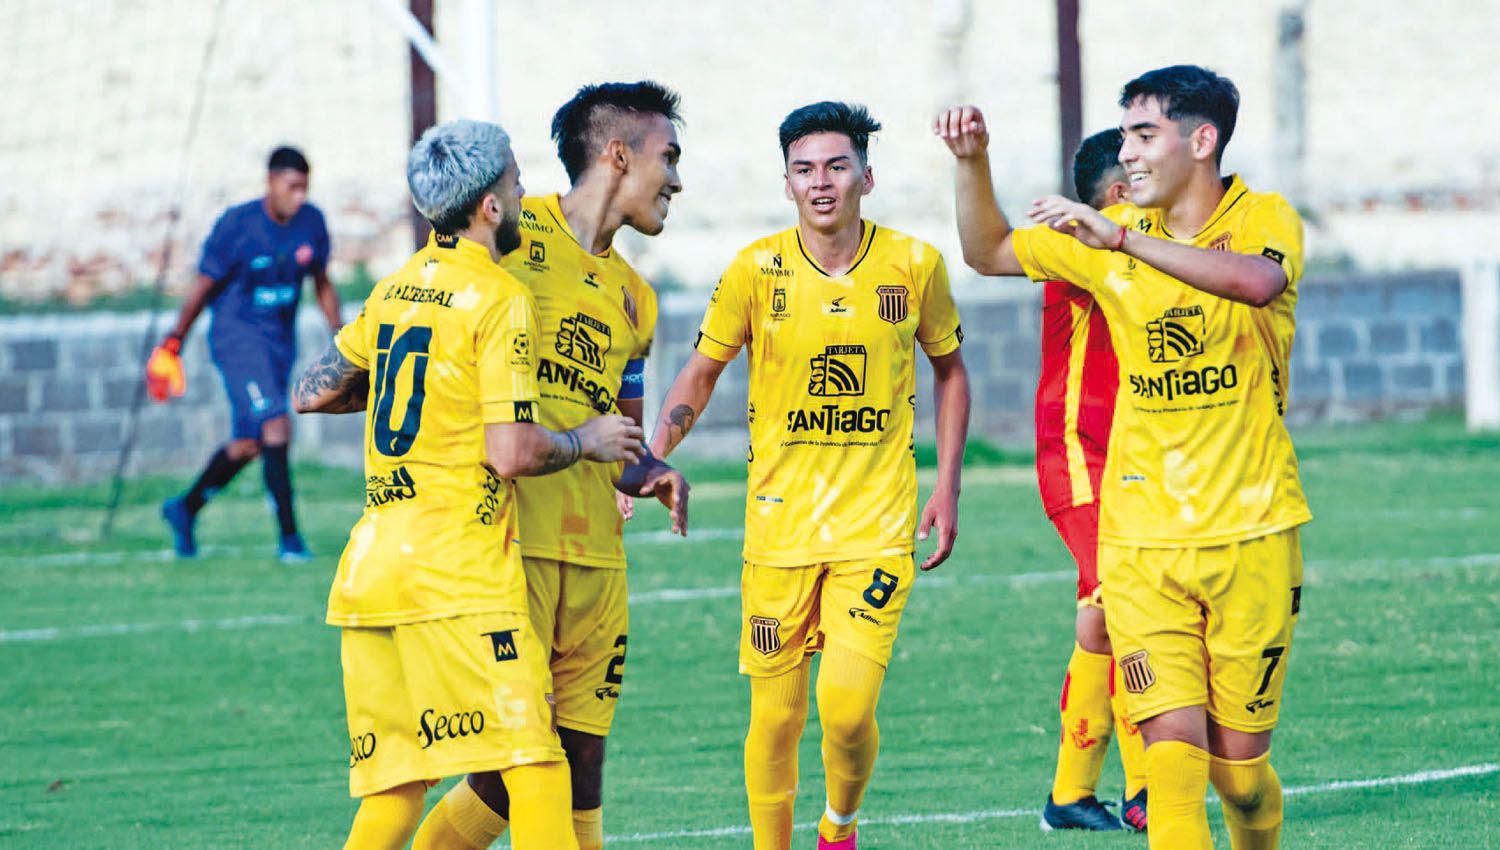 Arranque a puro gol- la Liga Santiaguentildea tuvo un estreno con muchas emociones